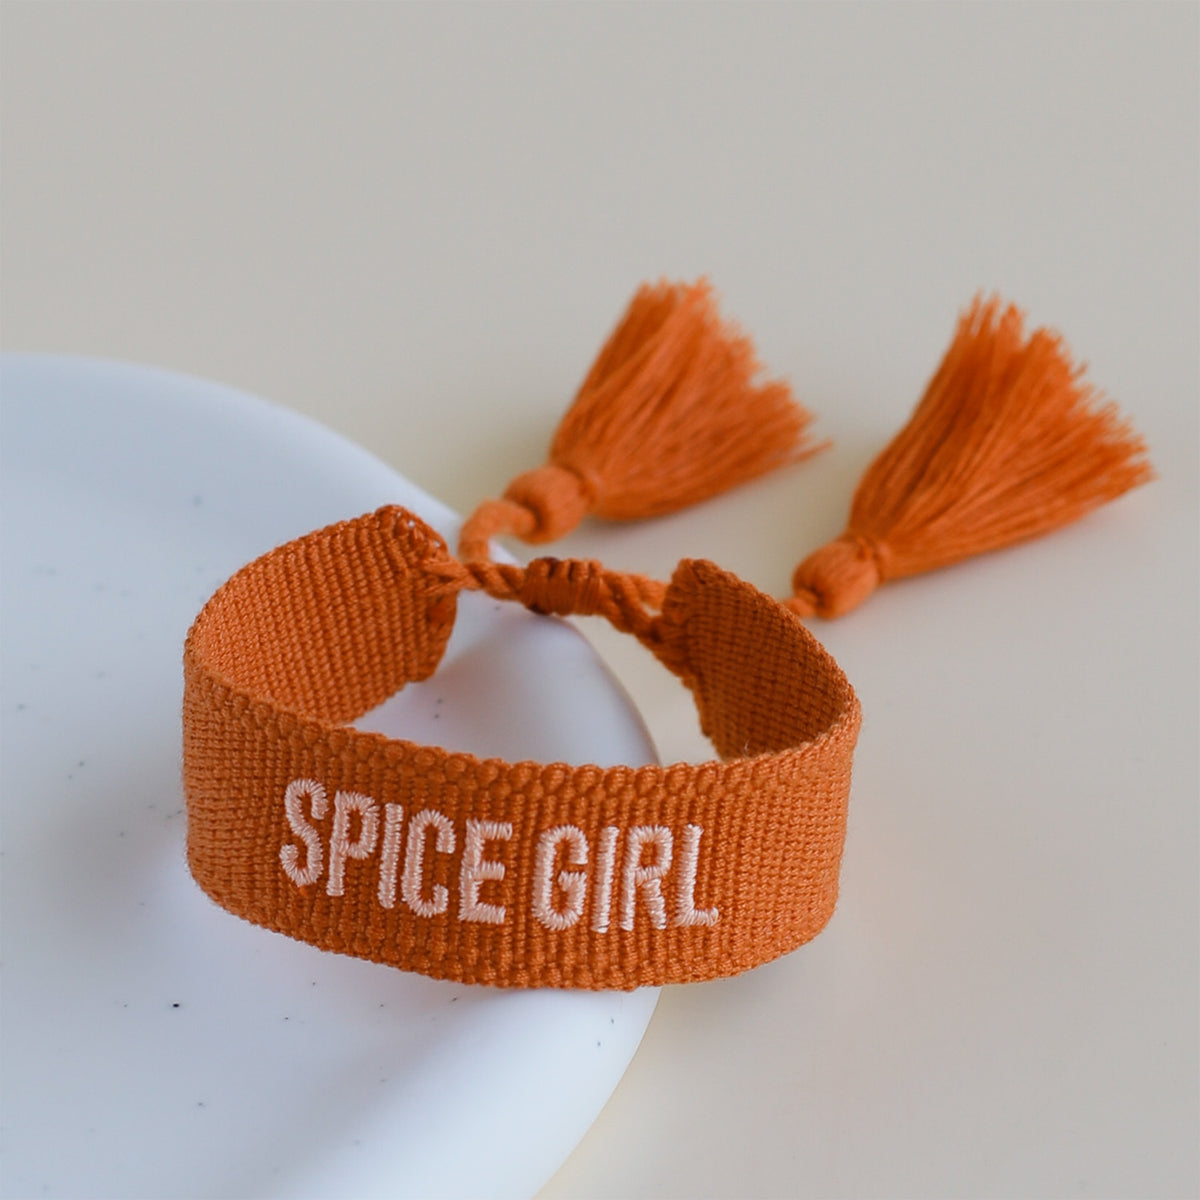 Woven Tassel Bracelet - Spice Girl